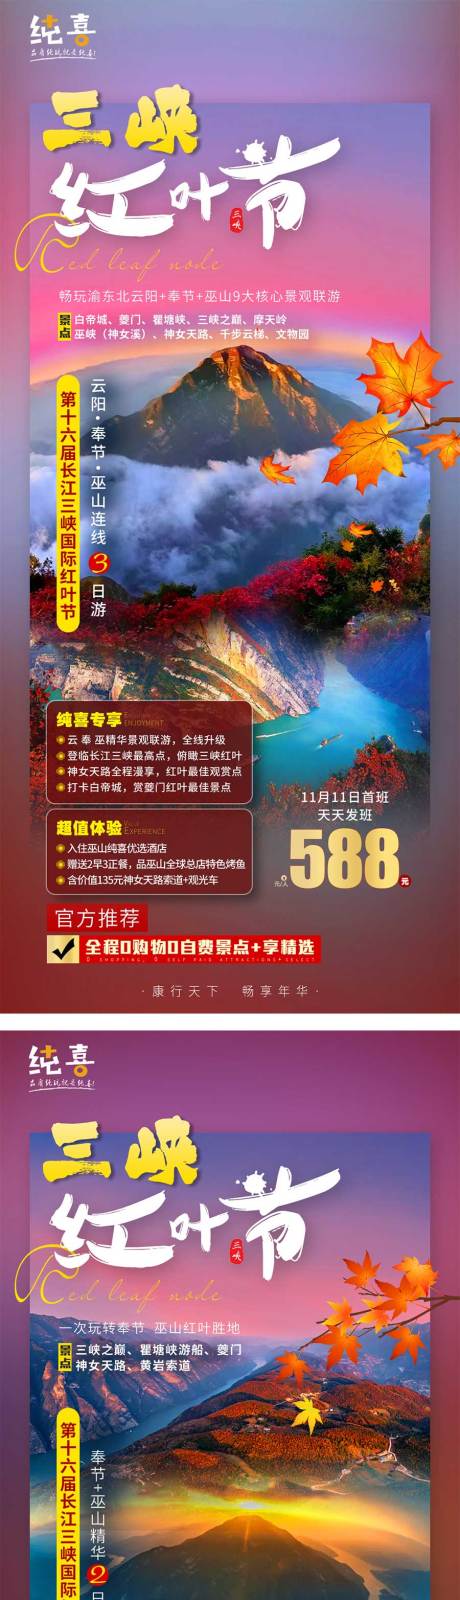 重庆三峡国际红叶节 